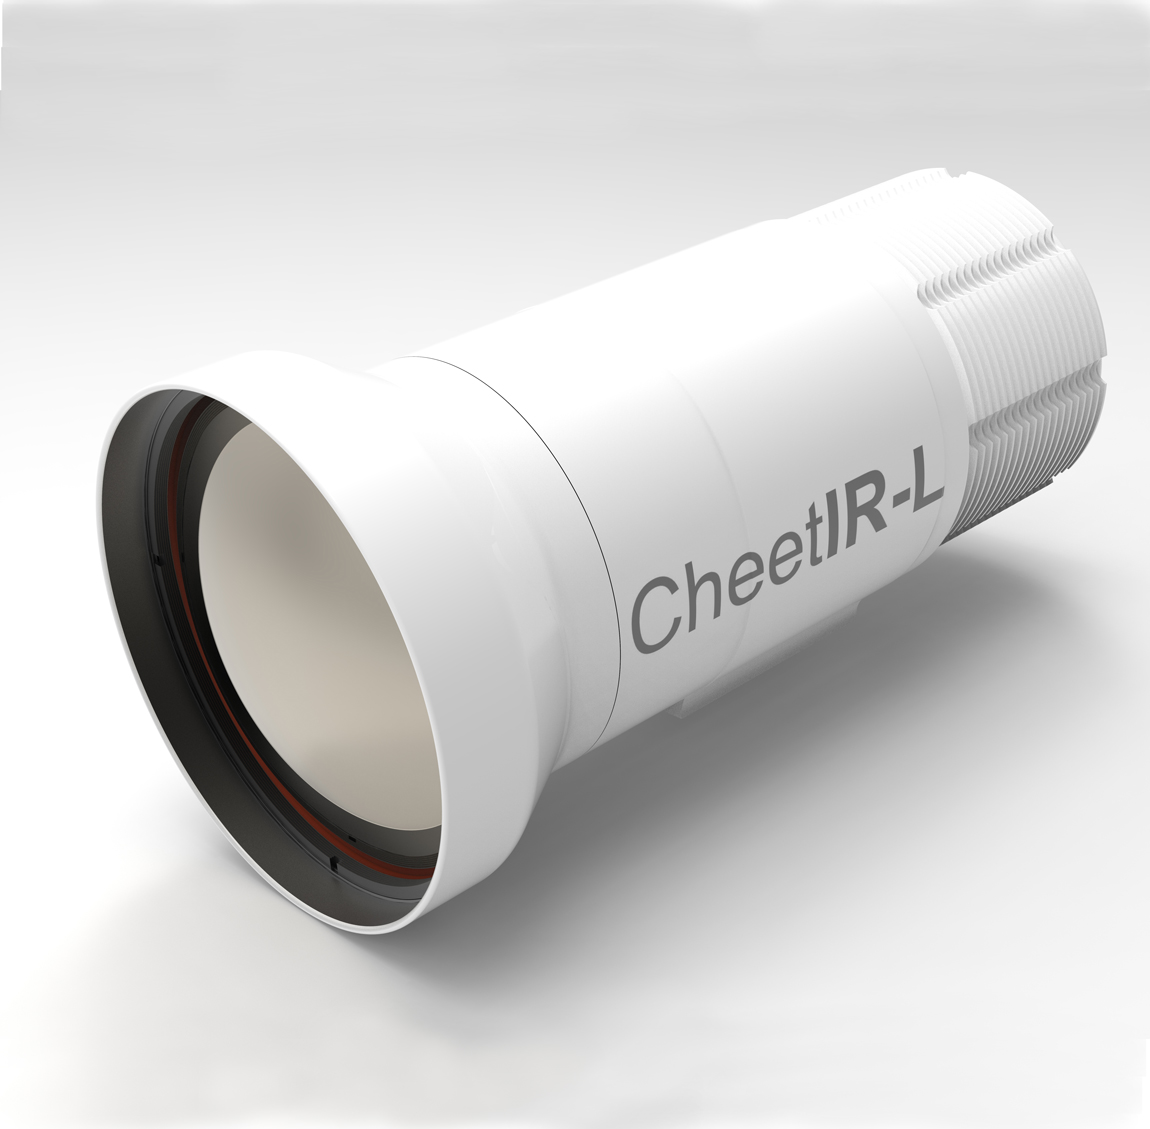 Cheetir-L产品图像